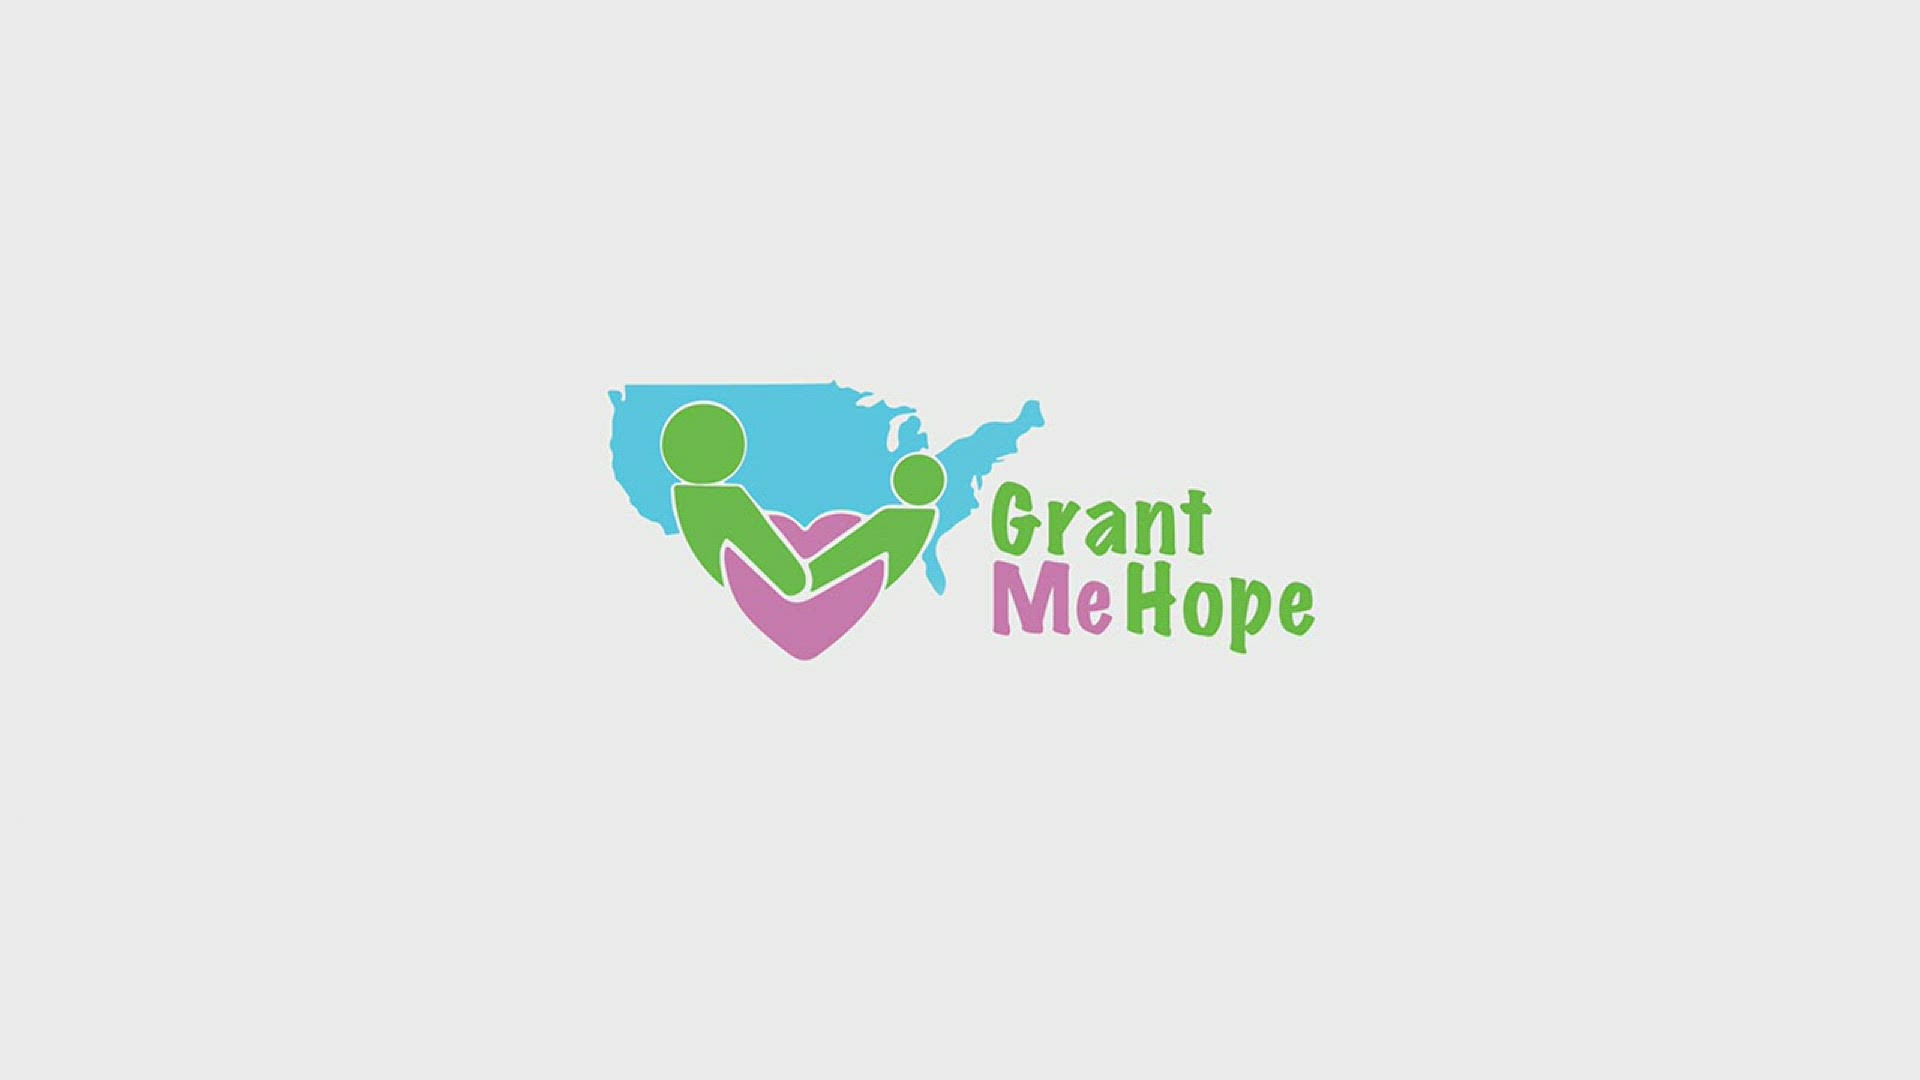 Grant Me Hope